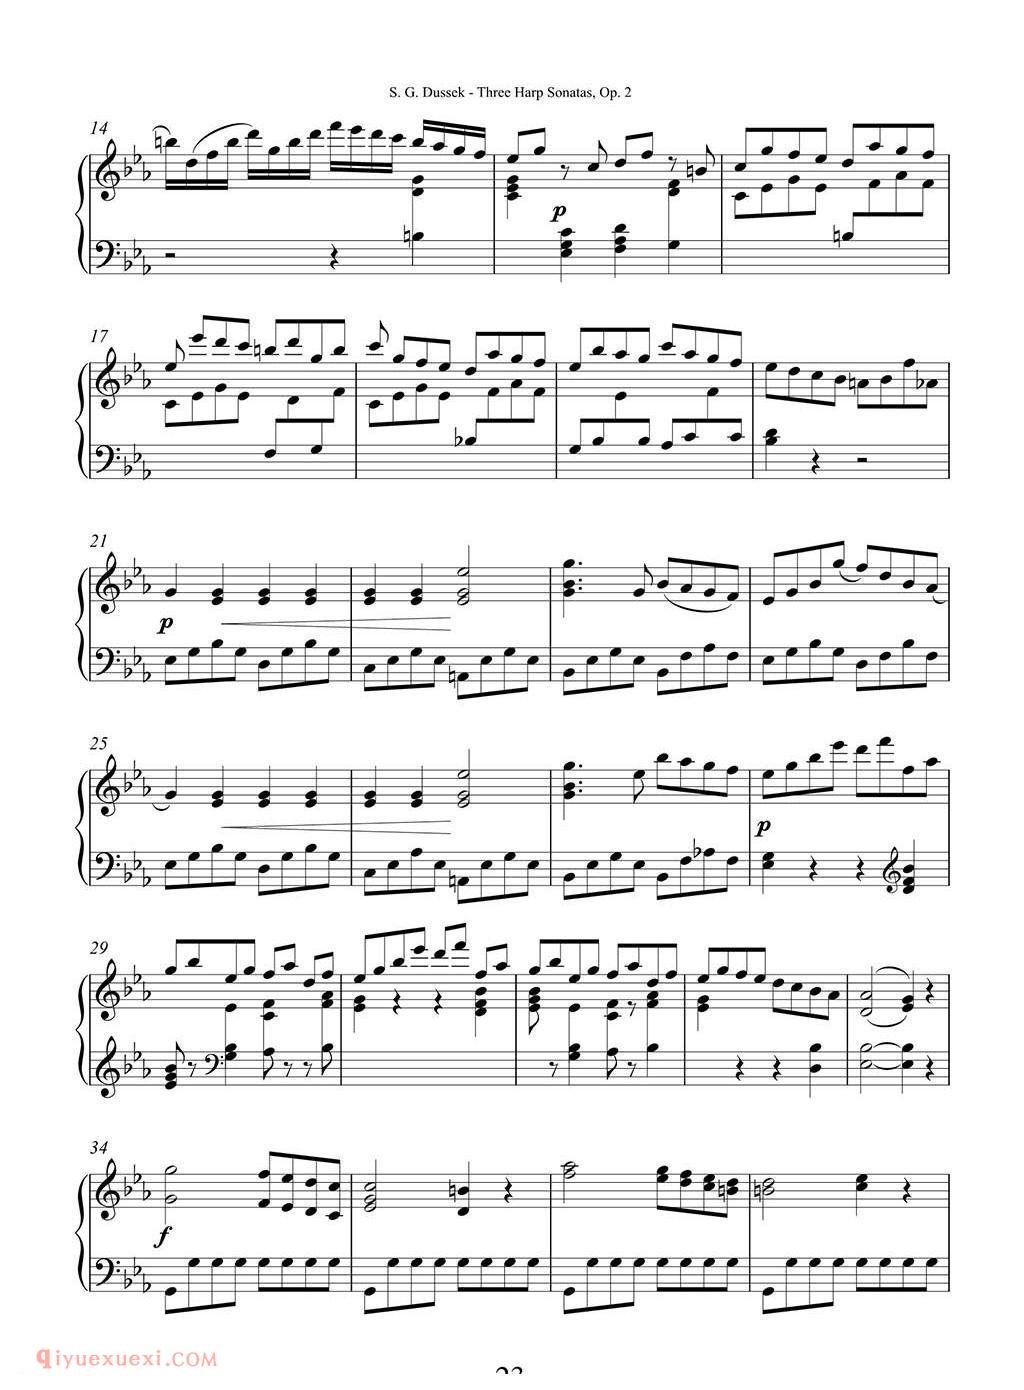 杜塞克三首竖琴奏鸣曲Op.2 No.3/Dussek Three Harp Sonatas Op. 2 No.3